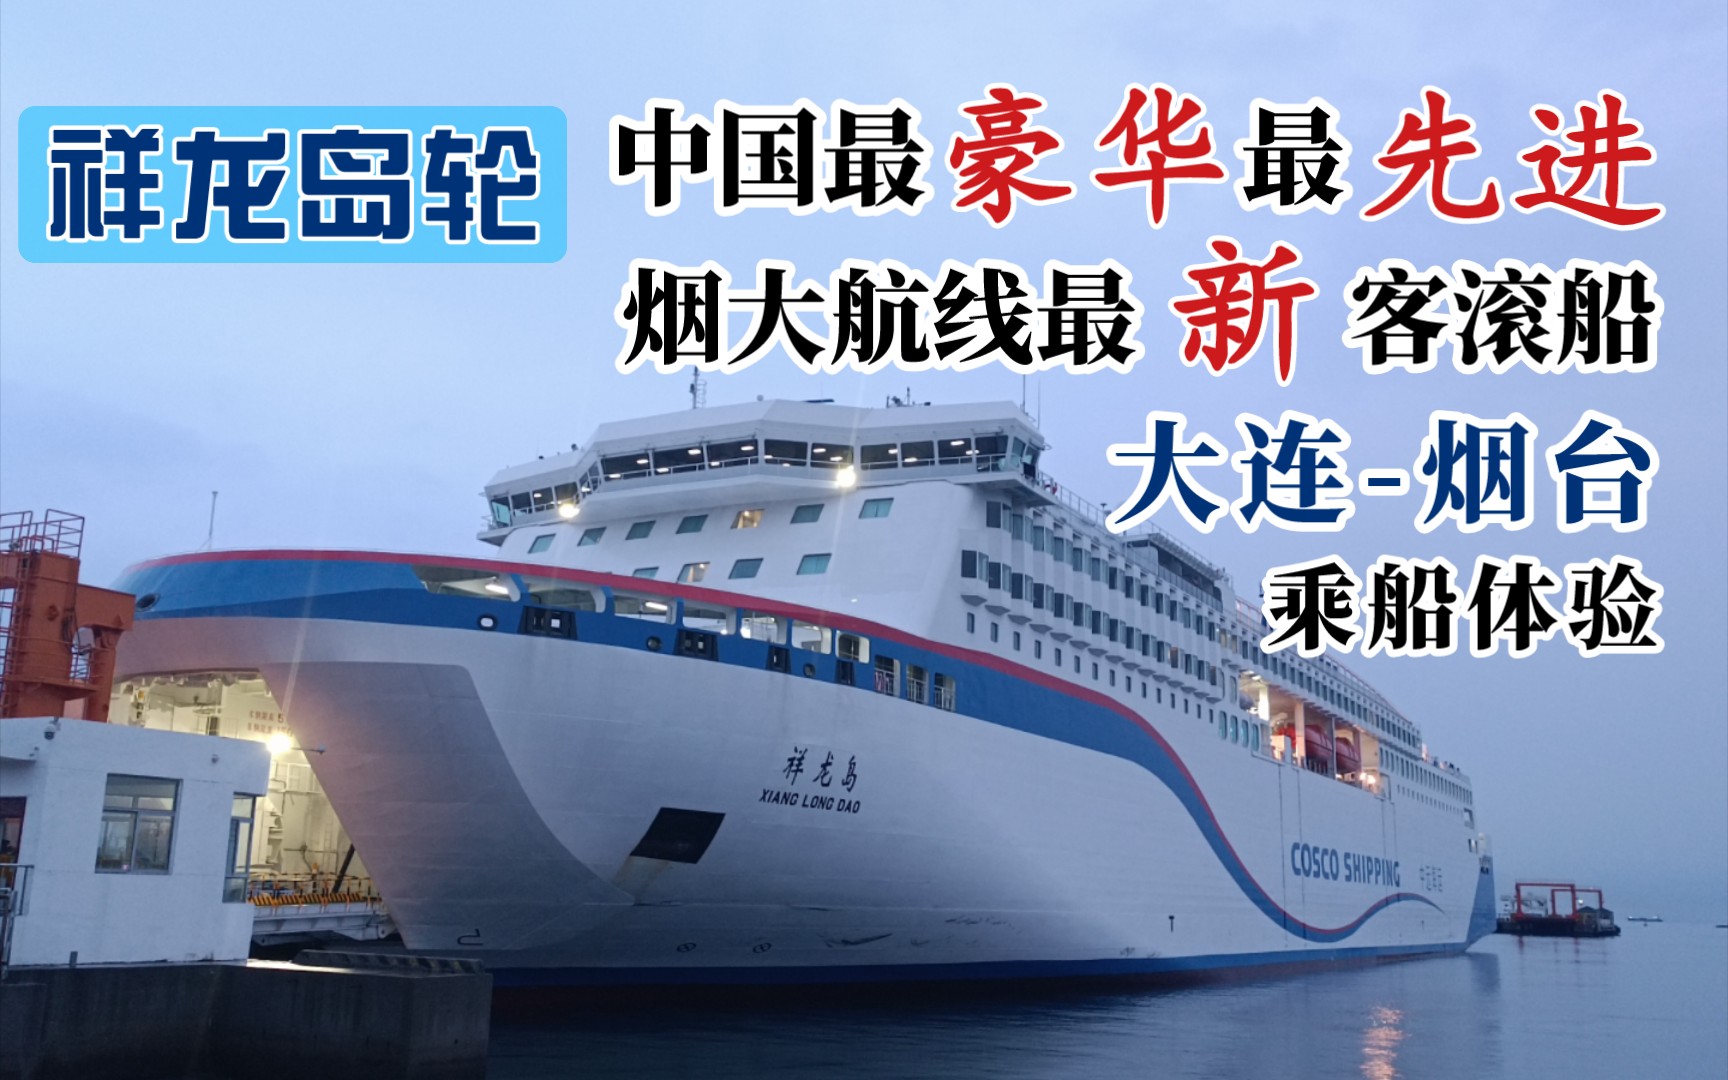 [祥龙岛轮] 中国最豪华最先进 烟大航线最新客滚船 祥龙岛号 大连湾港-烟台港 乘船体验